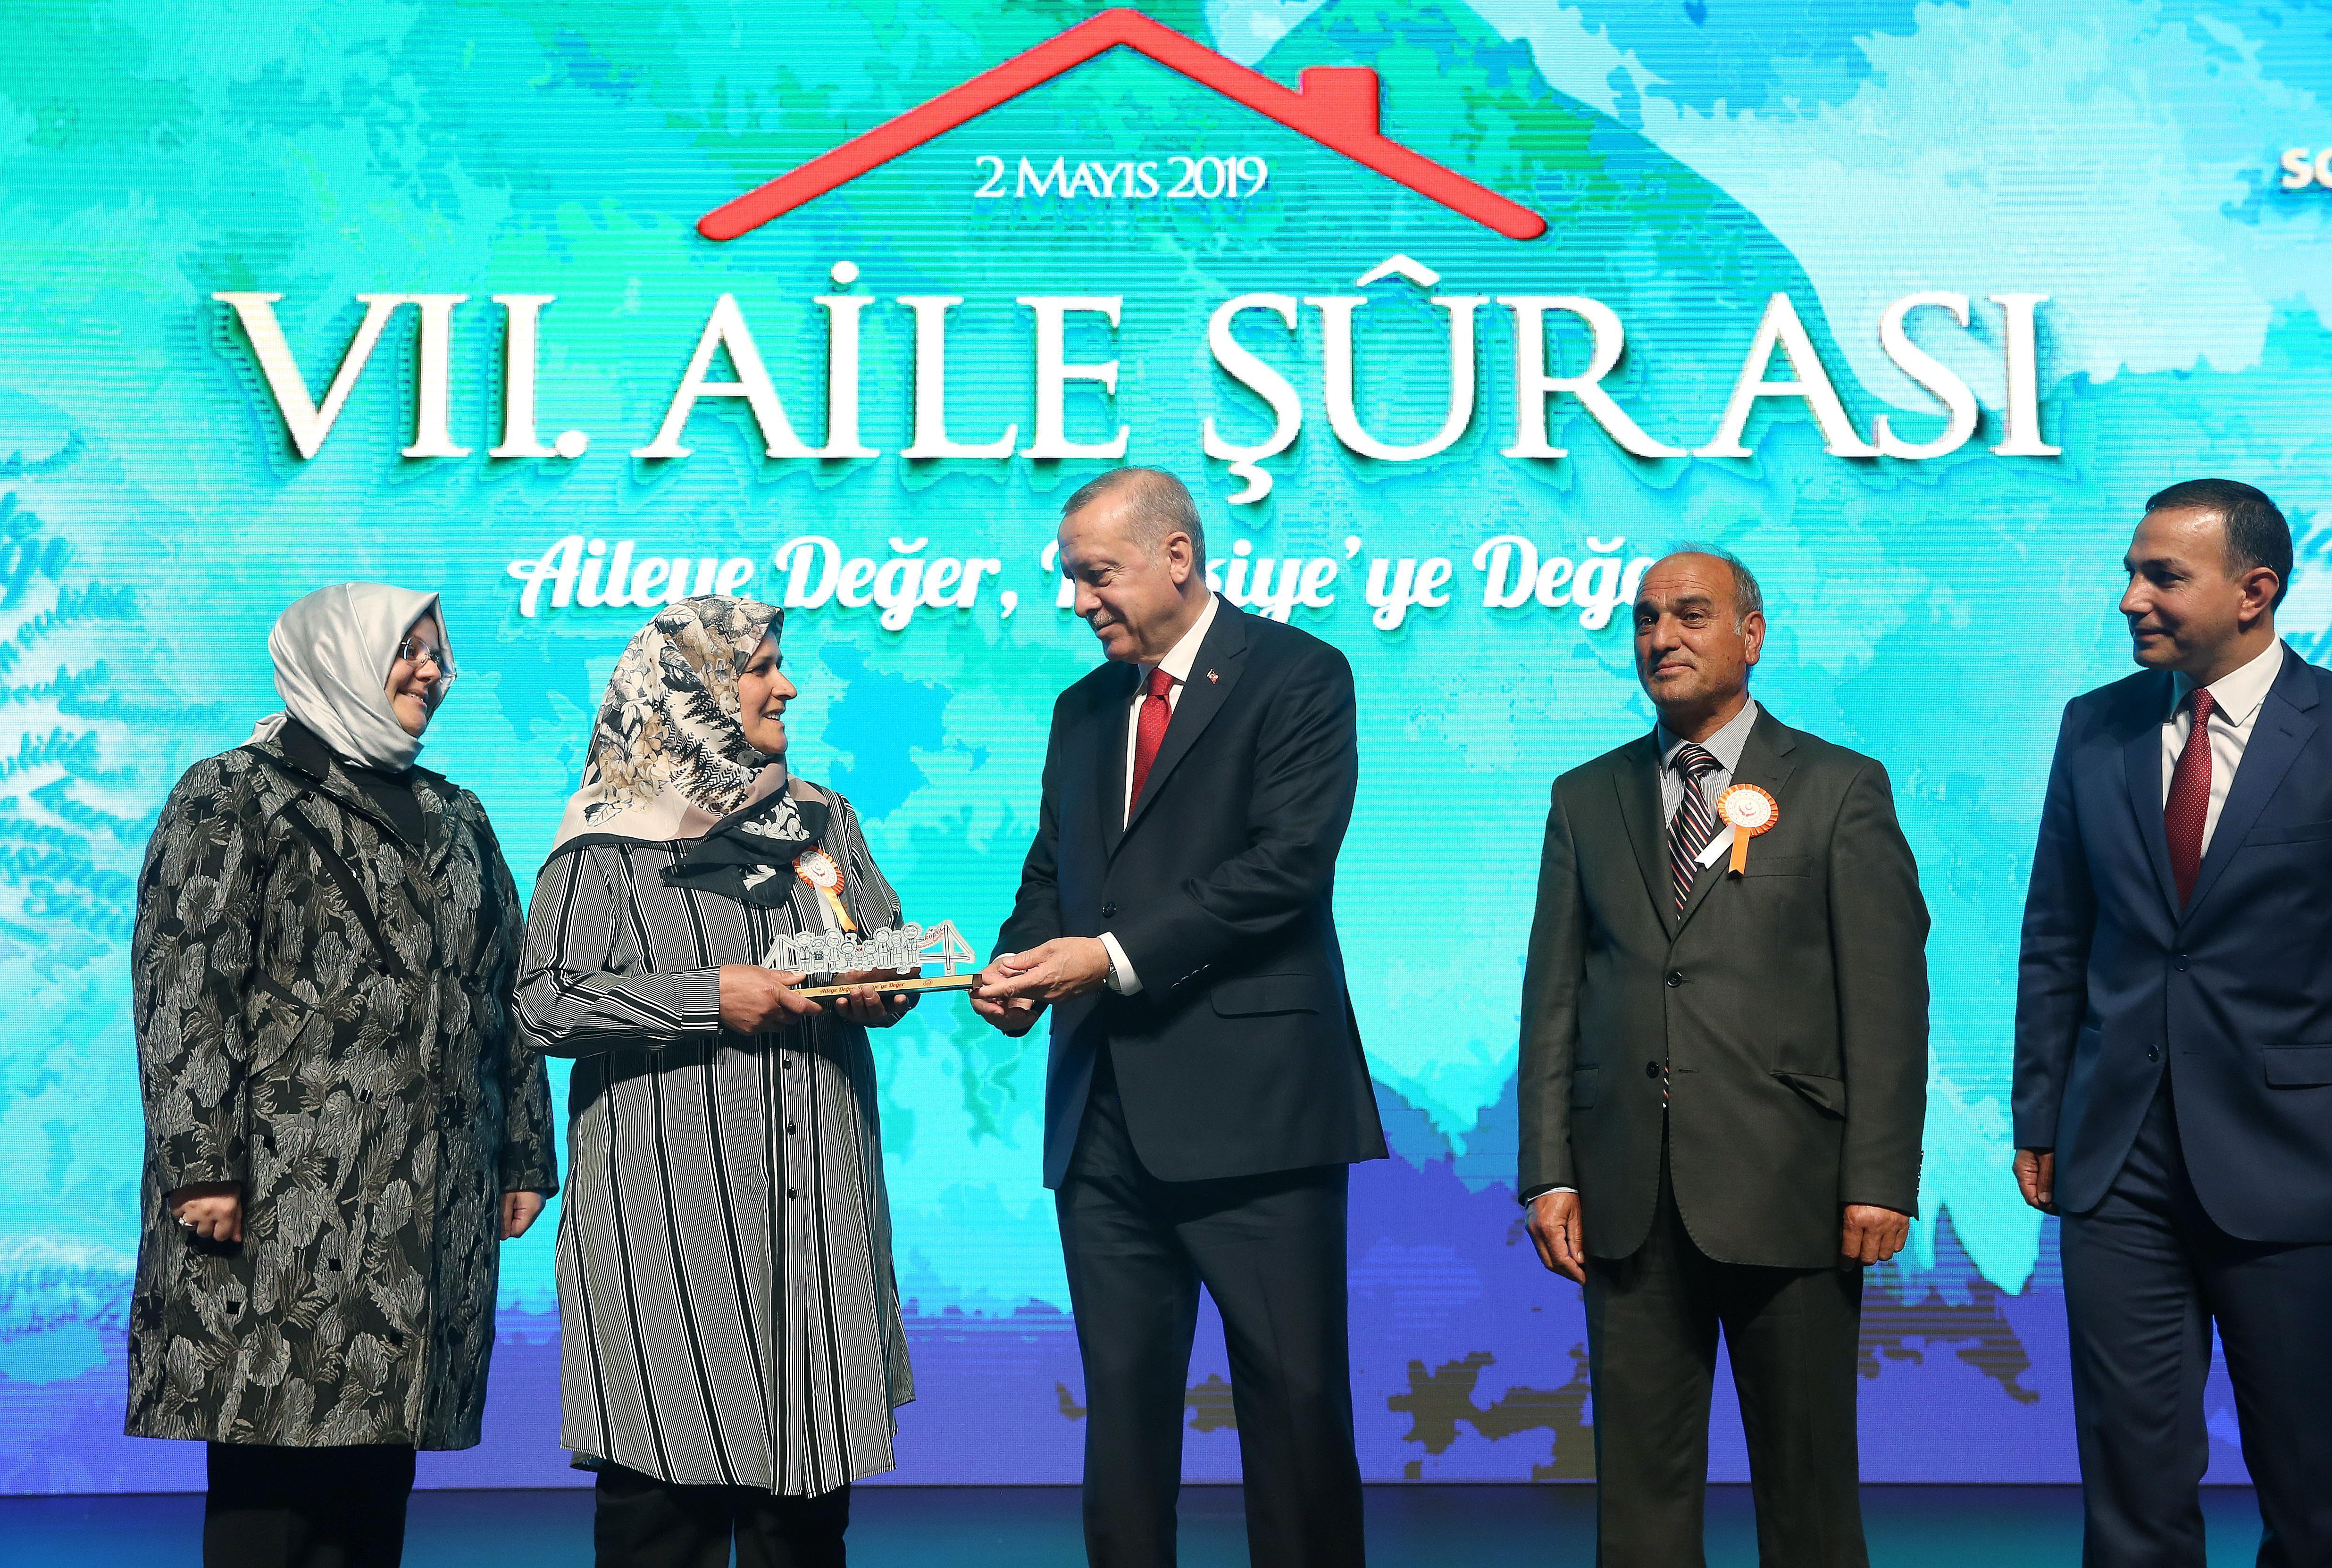 Cumhurbaşkanı Erdoğan: Güçlü milletler güçlü ailelerden oluşur